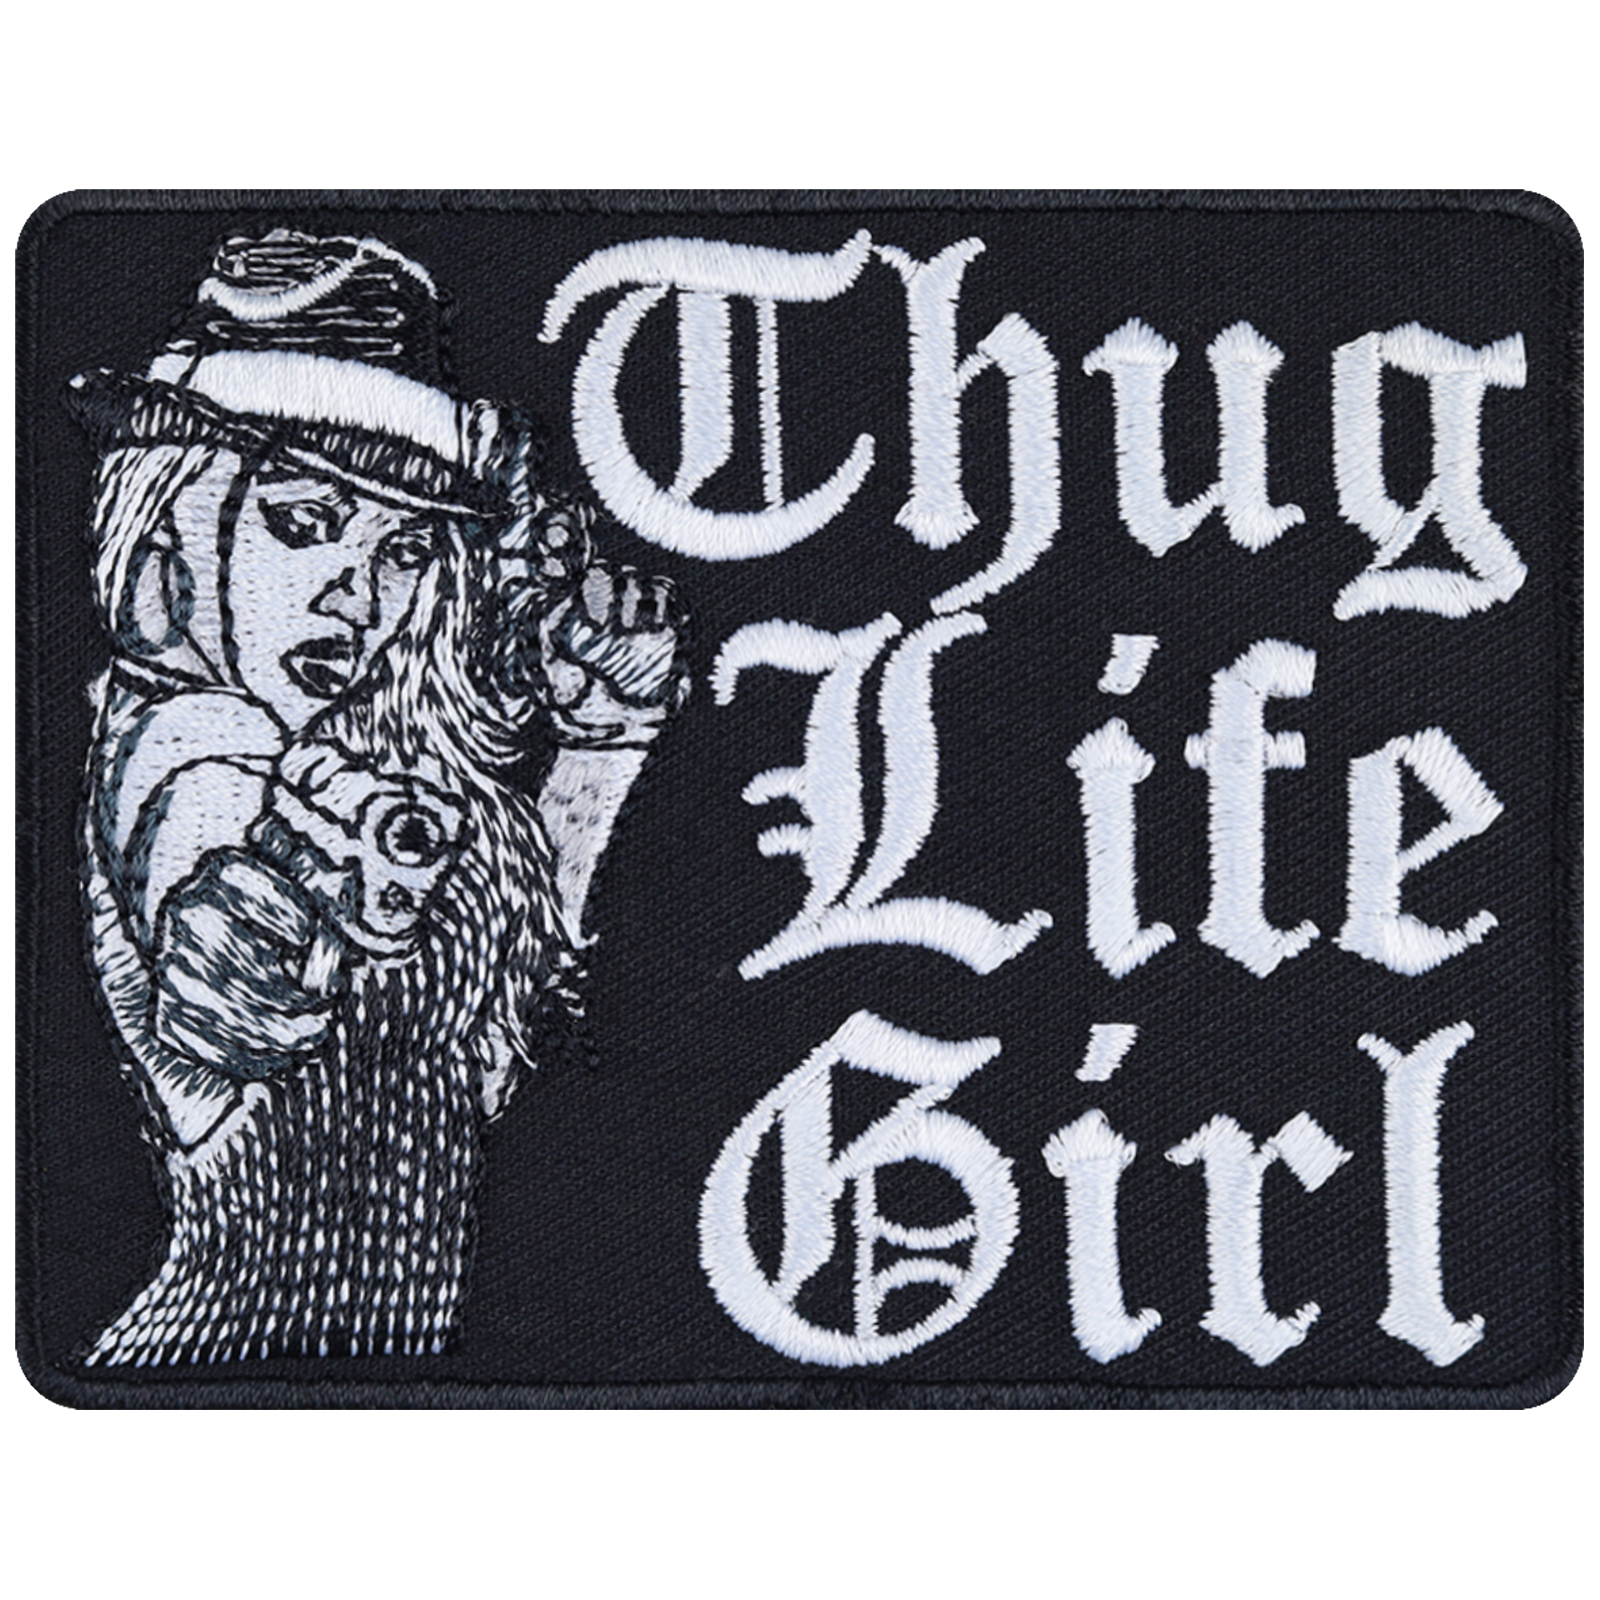 Thug life girl - Patch